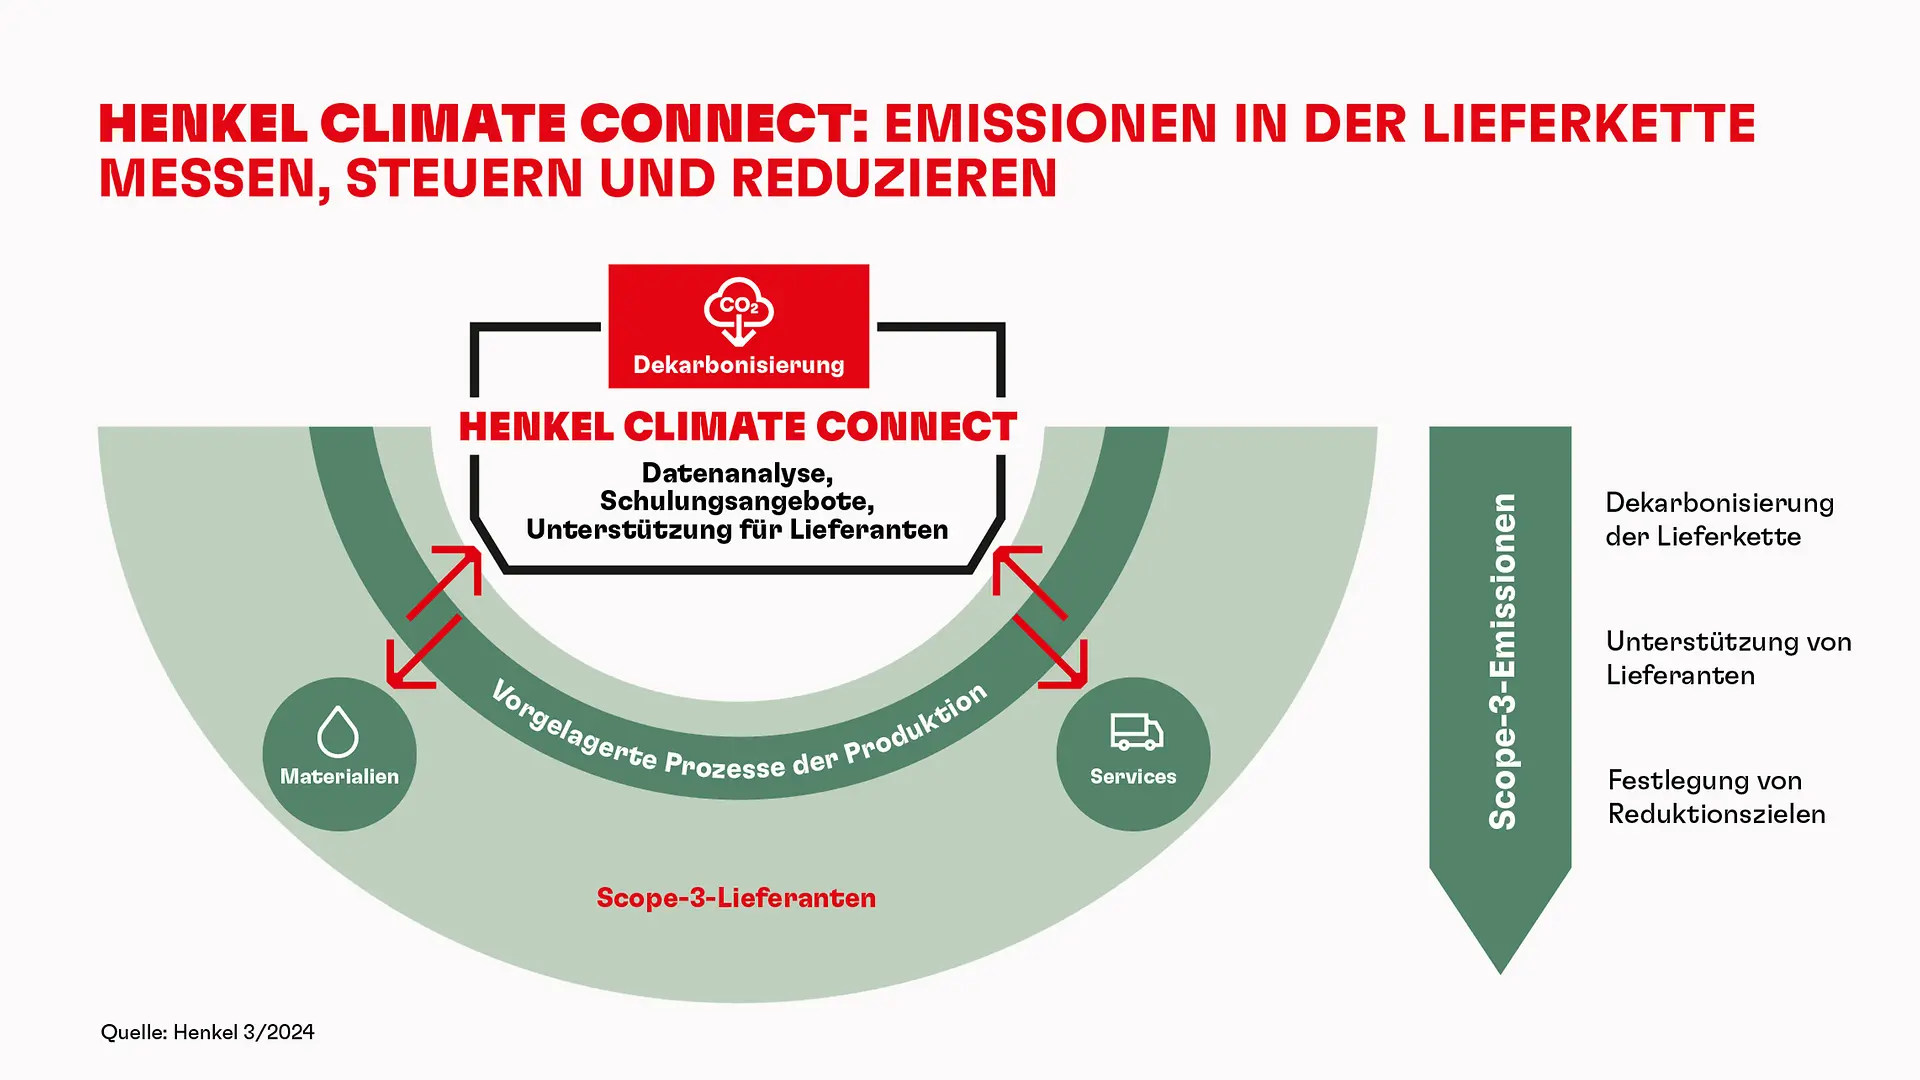 
Henkel führt ein Engagement-Programm zur Erfassung von Klimadaten für seine weltweiten Lieferanten ein.